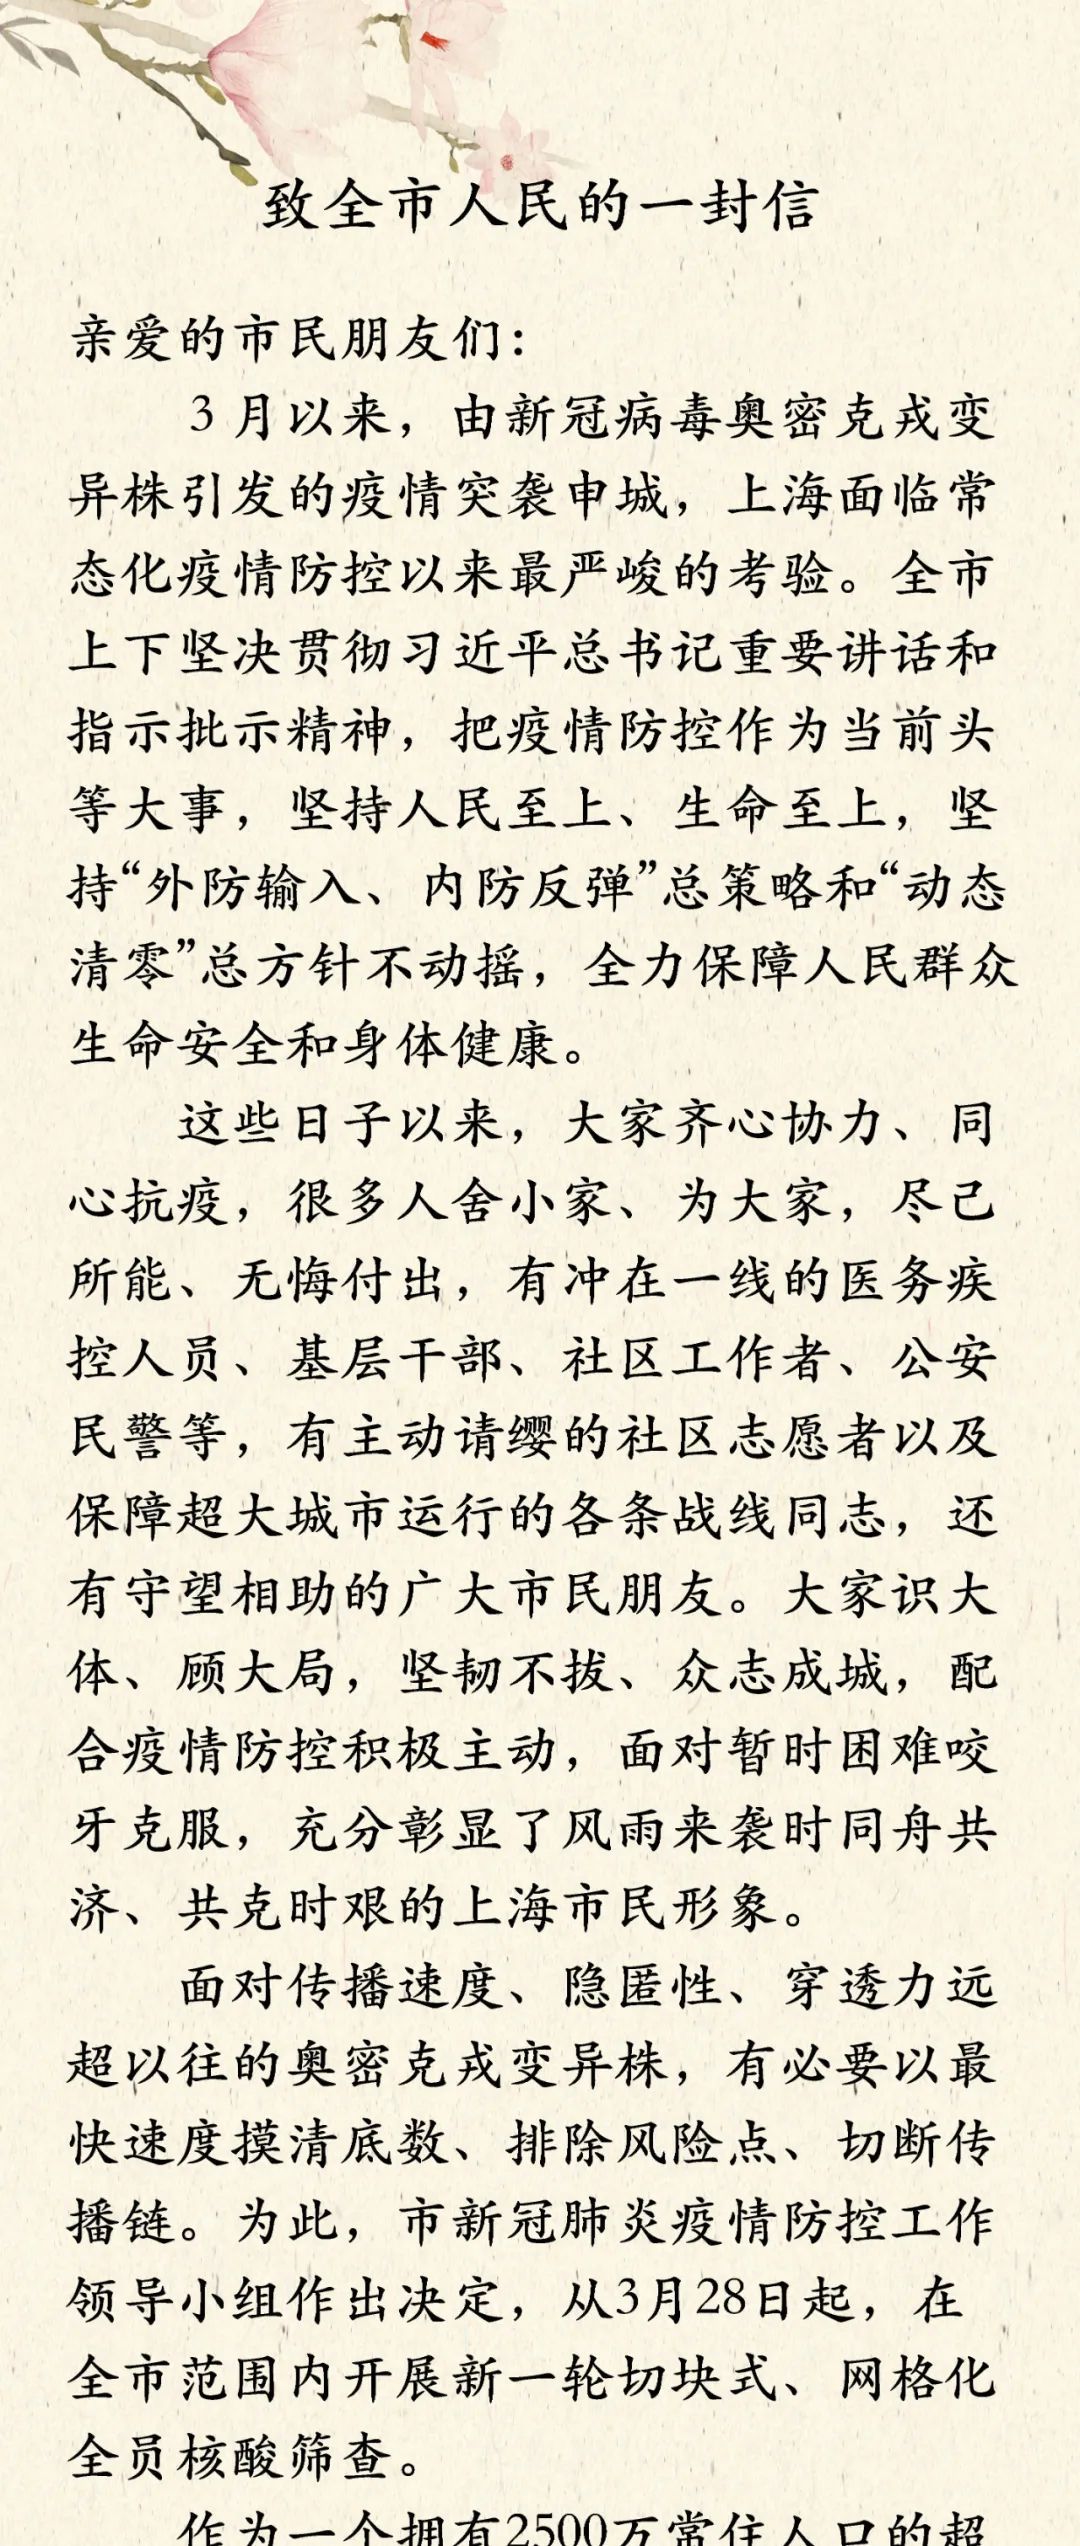 上海市委市政府致信全体市民：感谢理解支持和付出